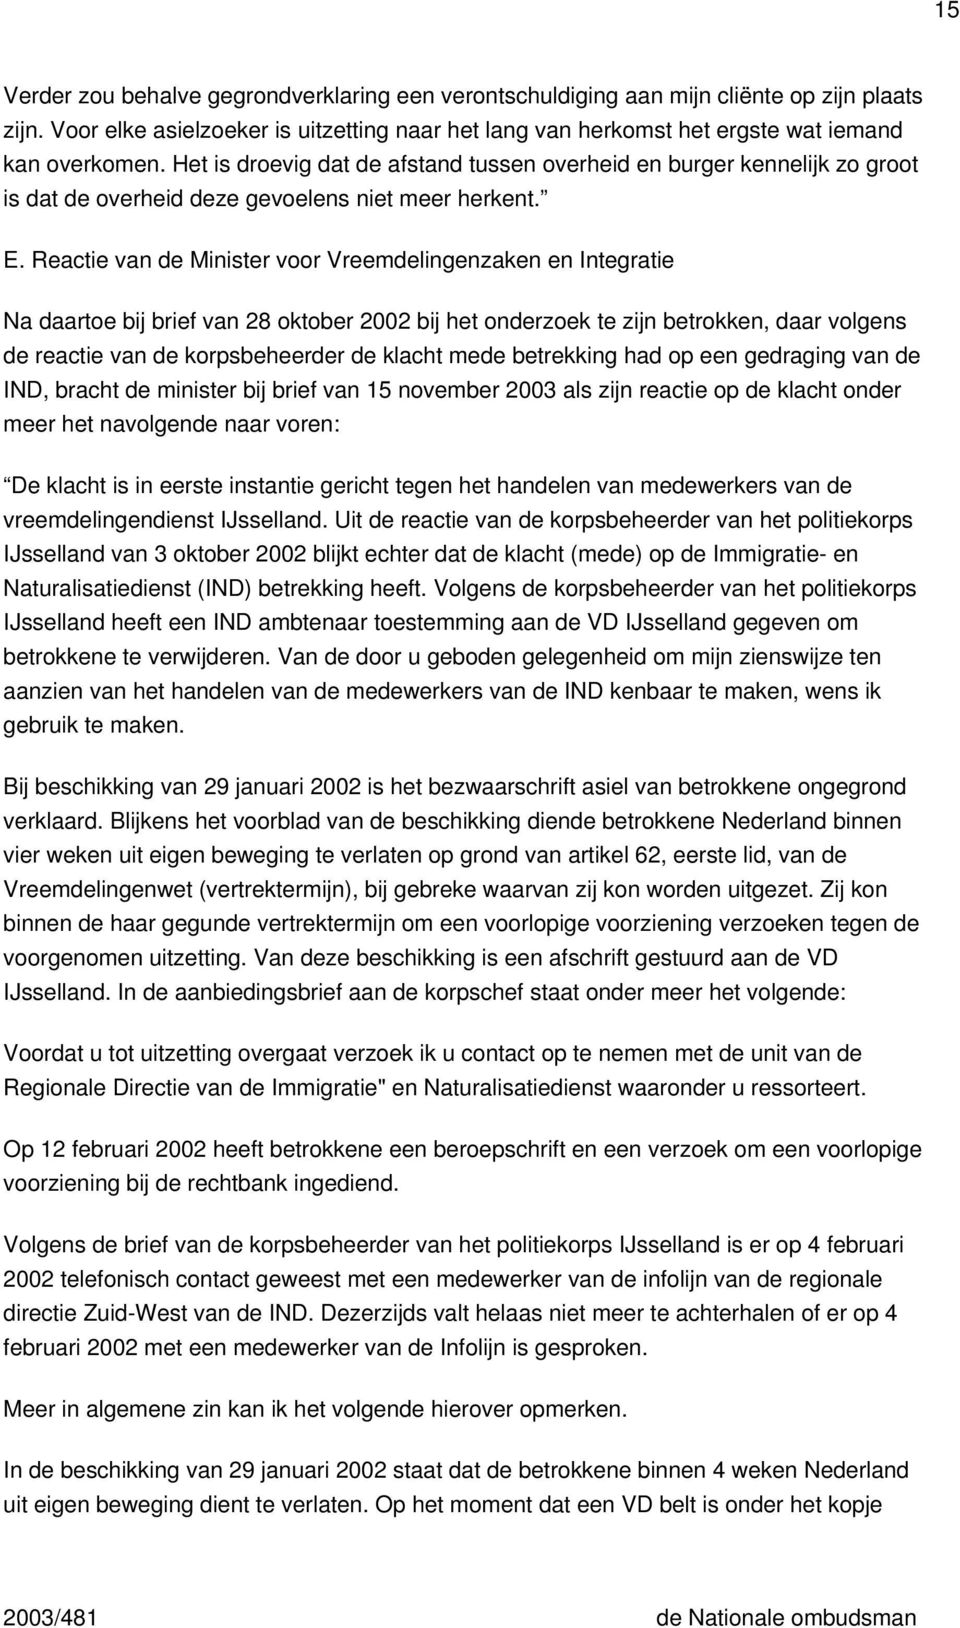 Reactie van de Minister voor Vreemdelingenzaken en Integratie Na daartoe bij brief van 28 oktober 2002 bij het onderzoek te zijn betrokken, daar volgens de reactie van de korpsbeheerder de klacht